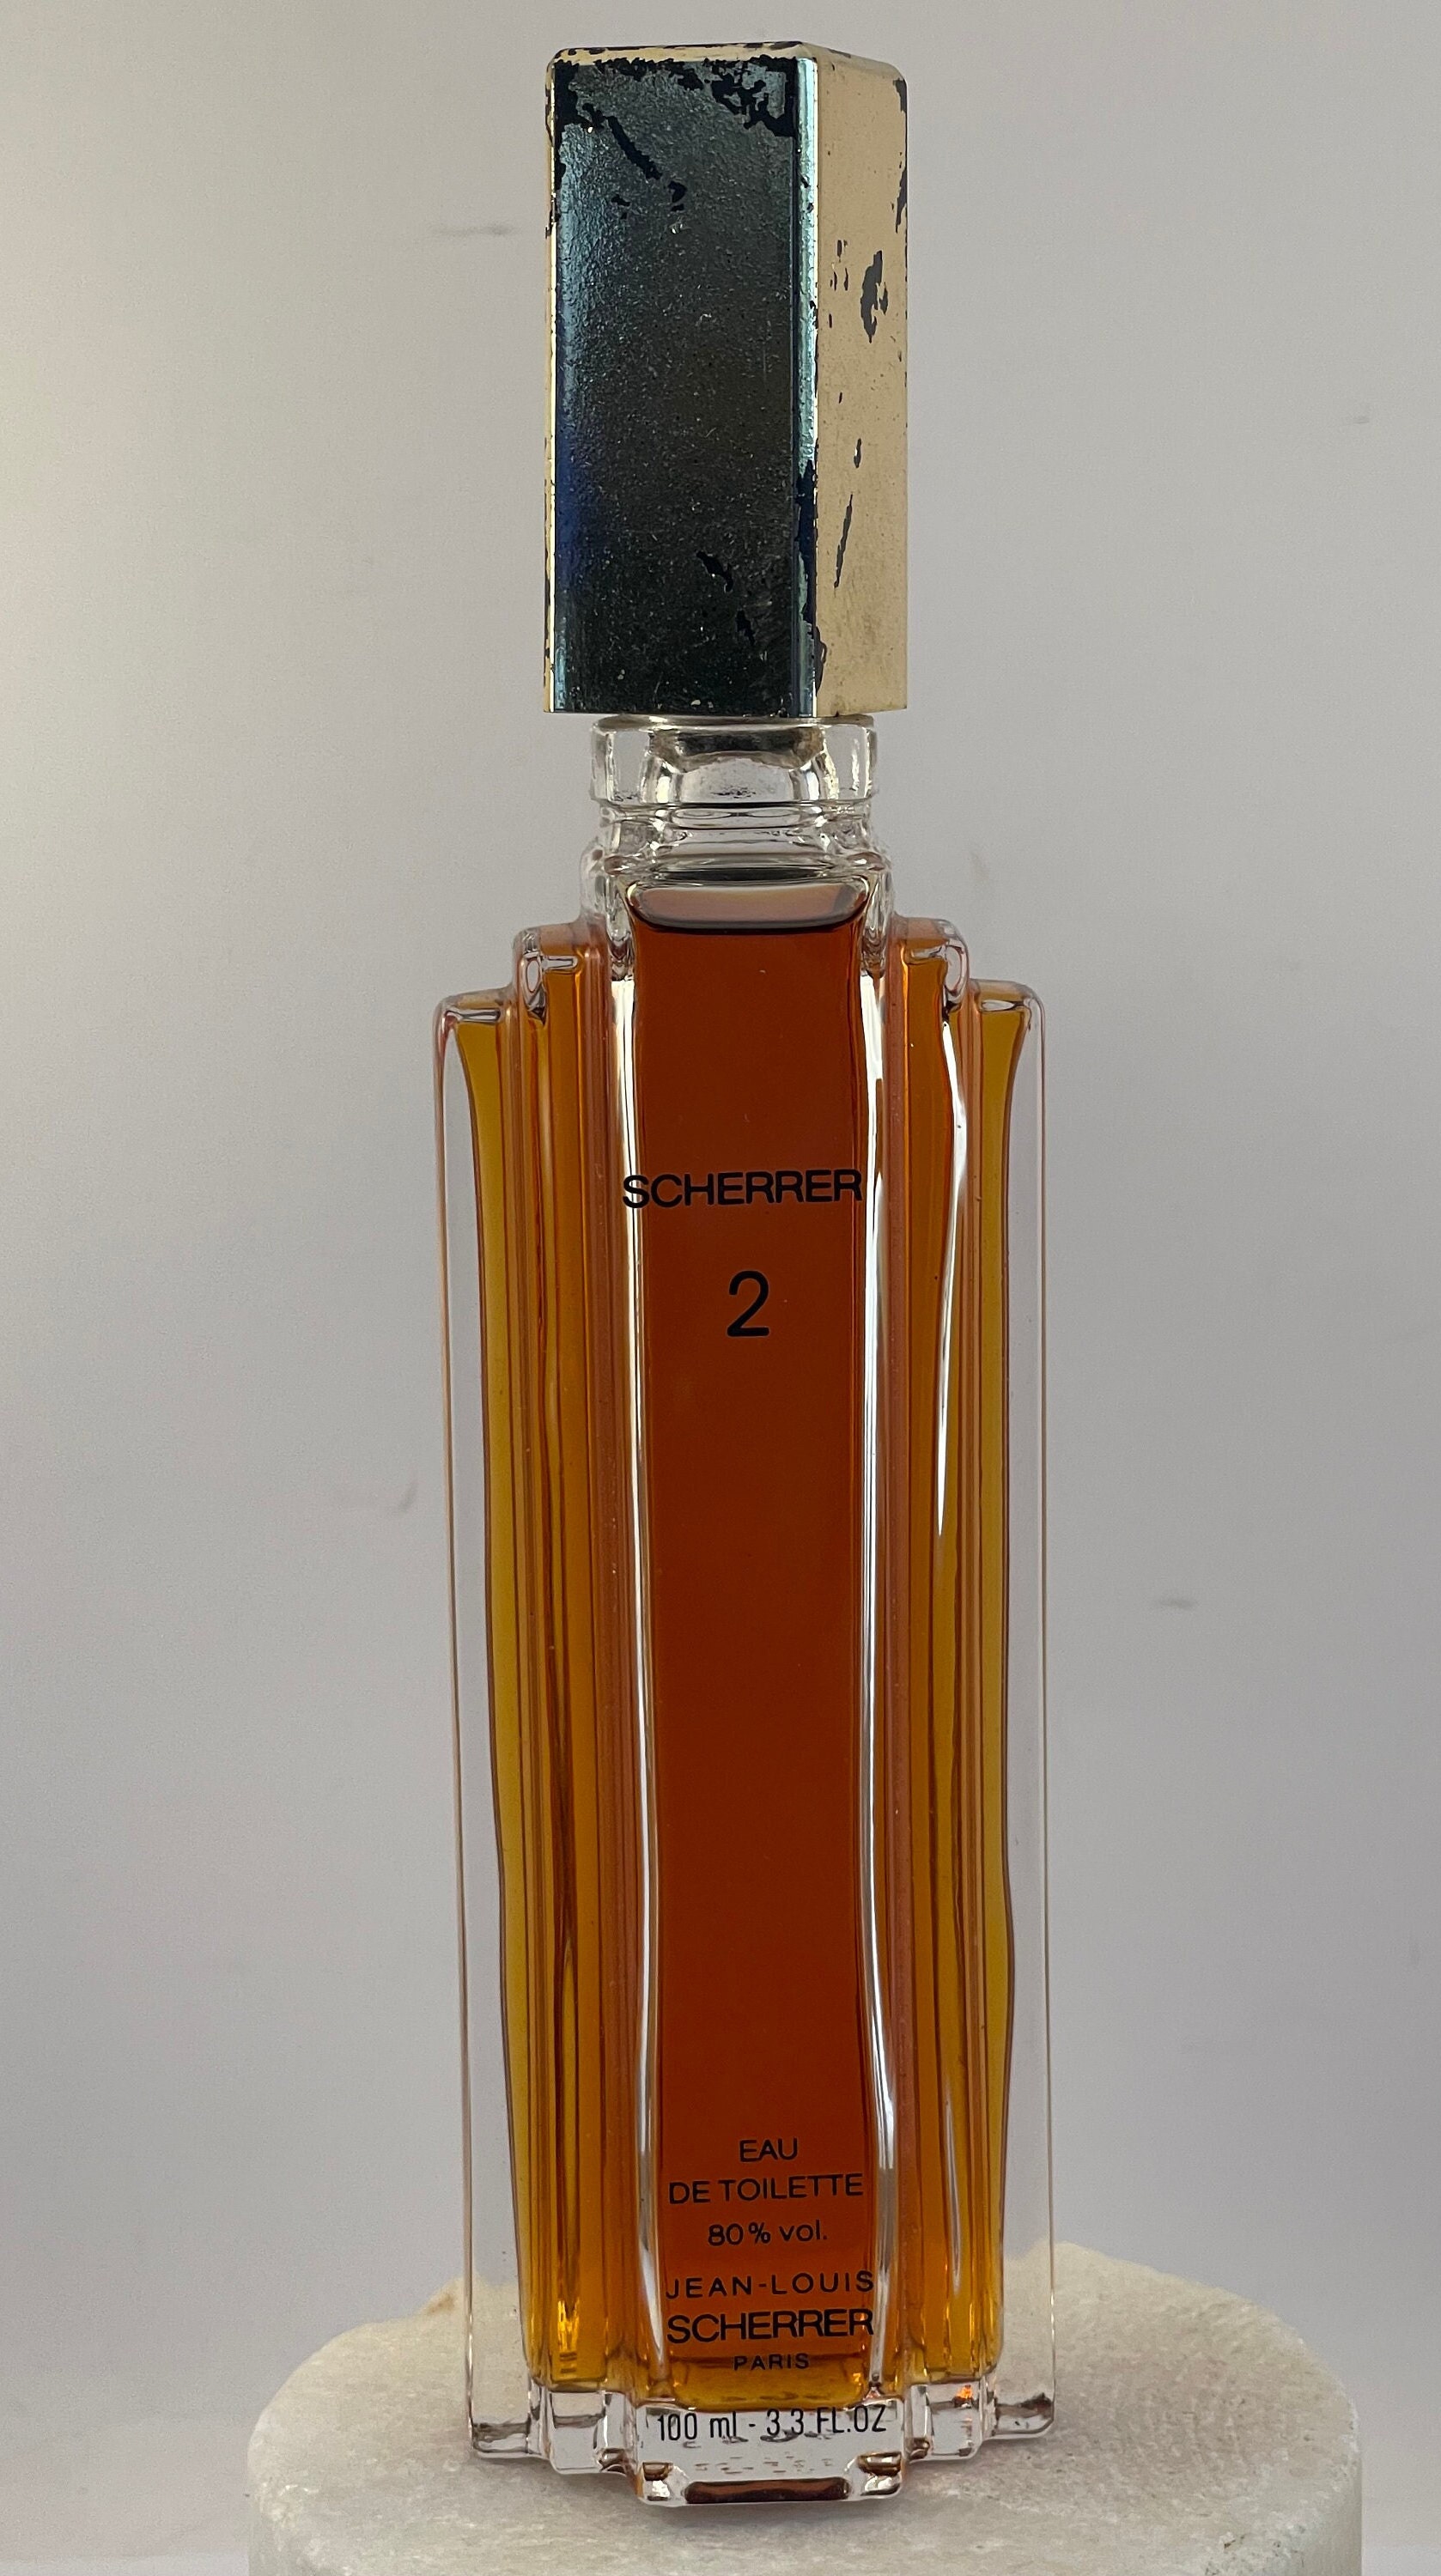 Jean-Louis Scherrer pure parfum 15 ml. Rare, vintage first edition